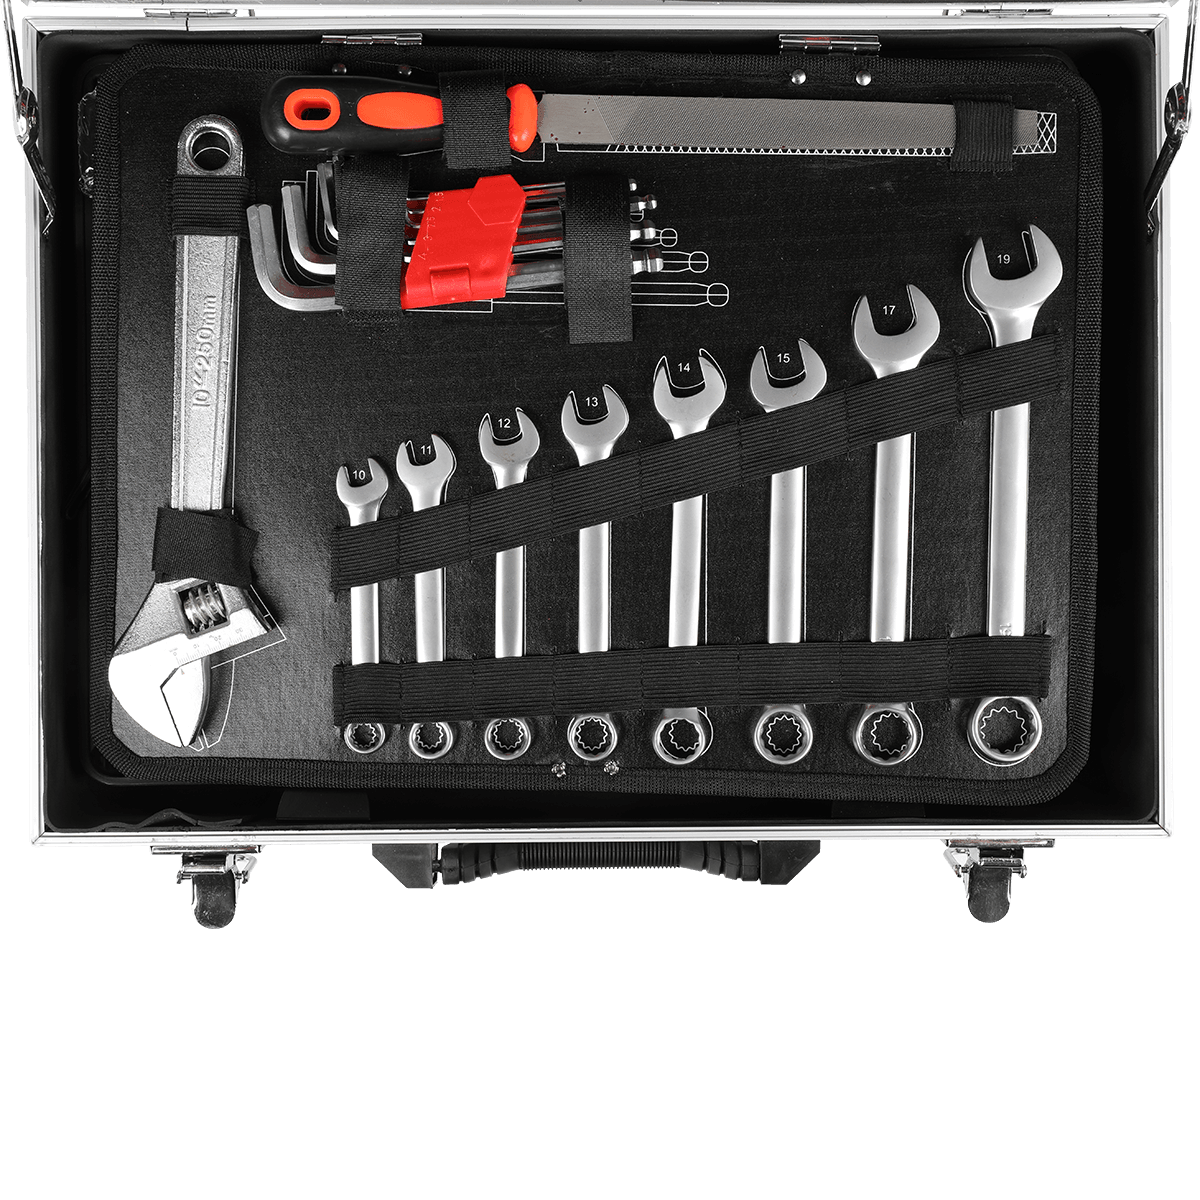 499 ชิ้น Ferramentas Professional Hardware Automotive Tool Socket Kit de Reparao de Automobile Tools Set